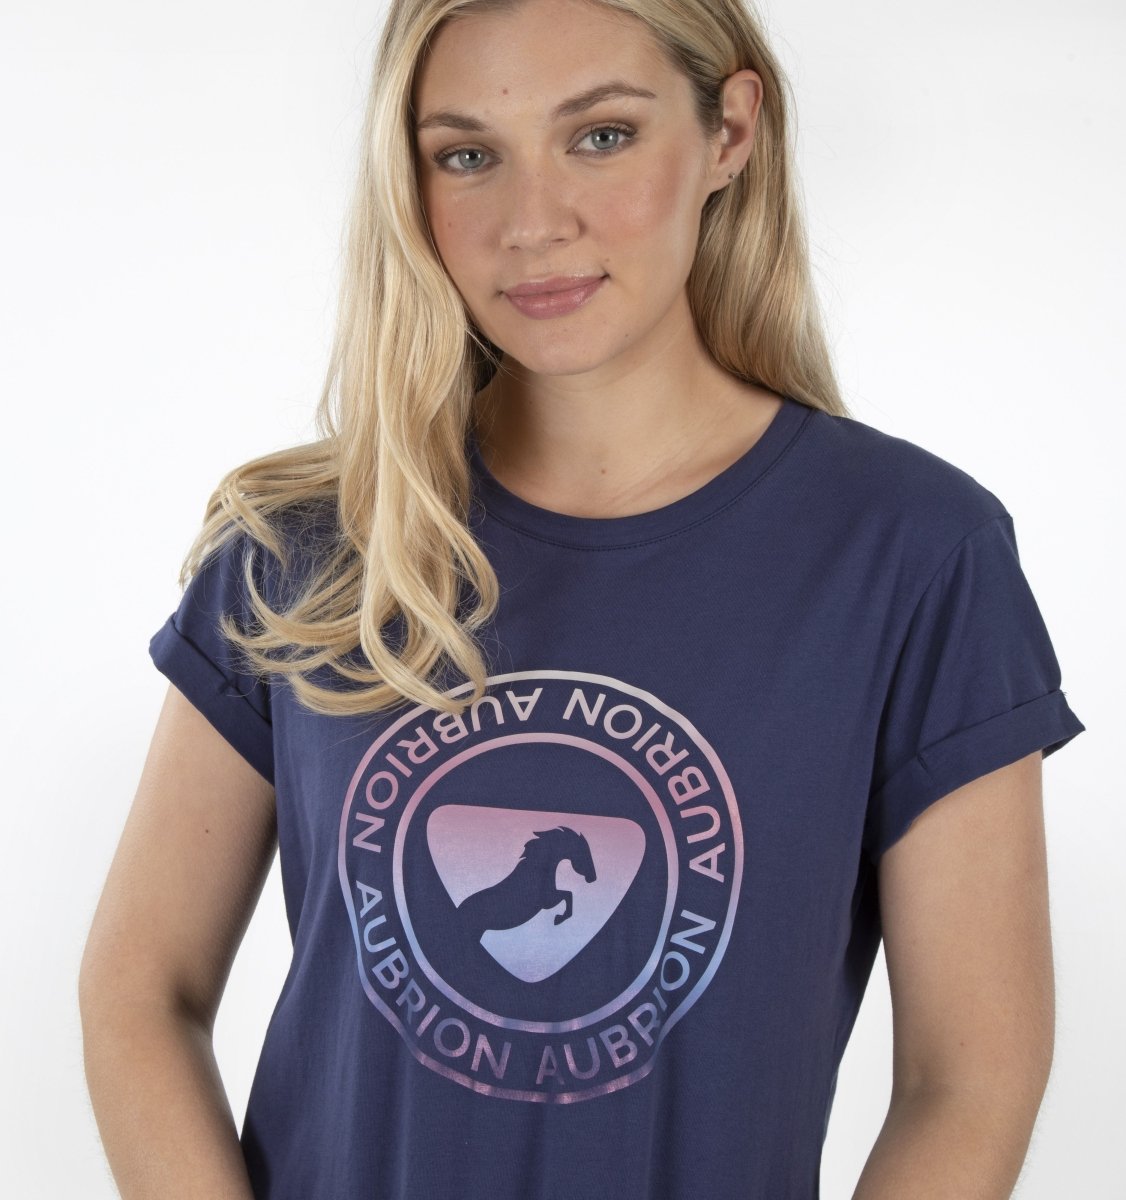 Aubrion Croxley T-Shirt - Dark Navy - L